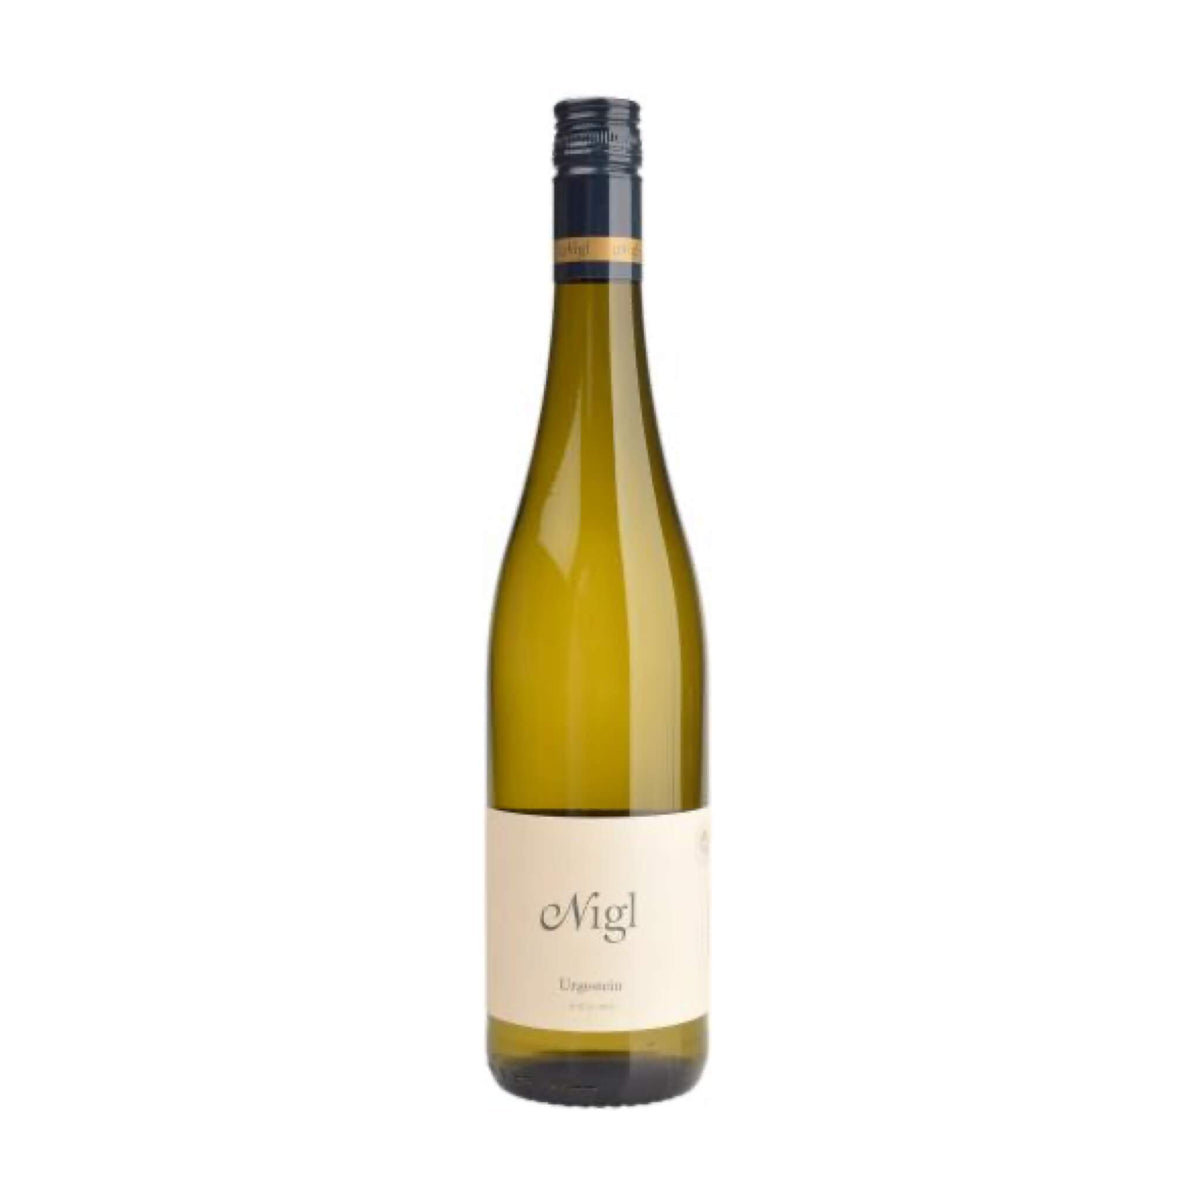 Martin Nigl-Weißwein-Riesling-2020 Riesling Urgestein Kremstal Qualitätswein-WINECOM